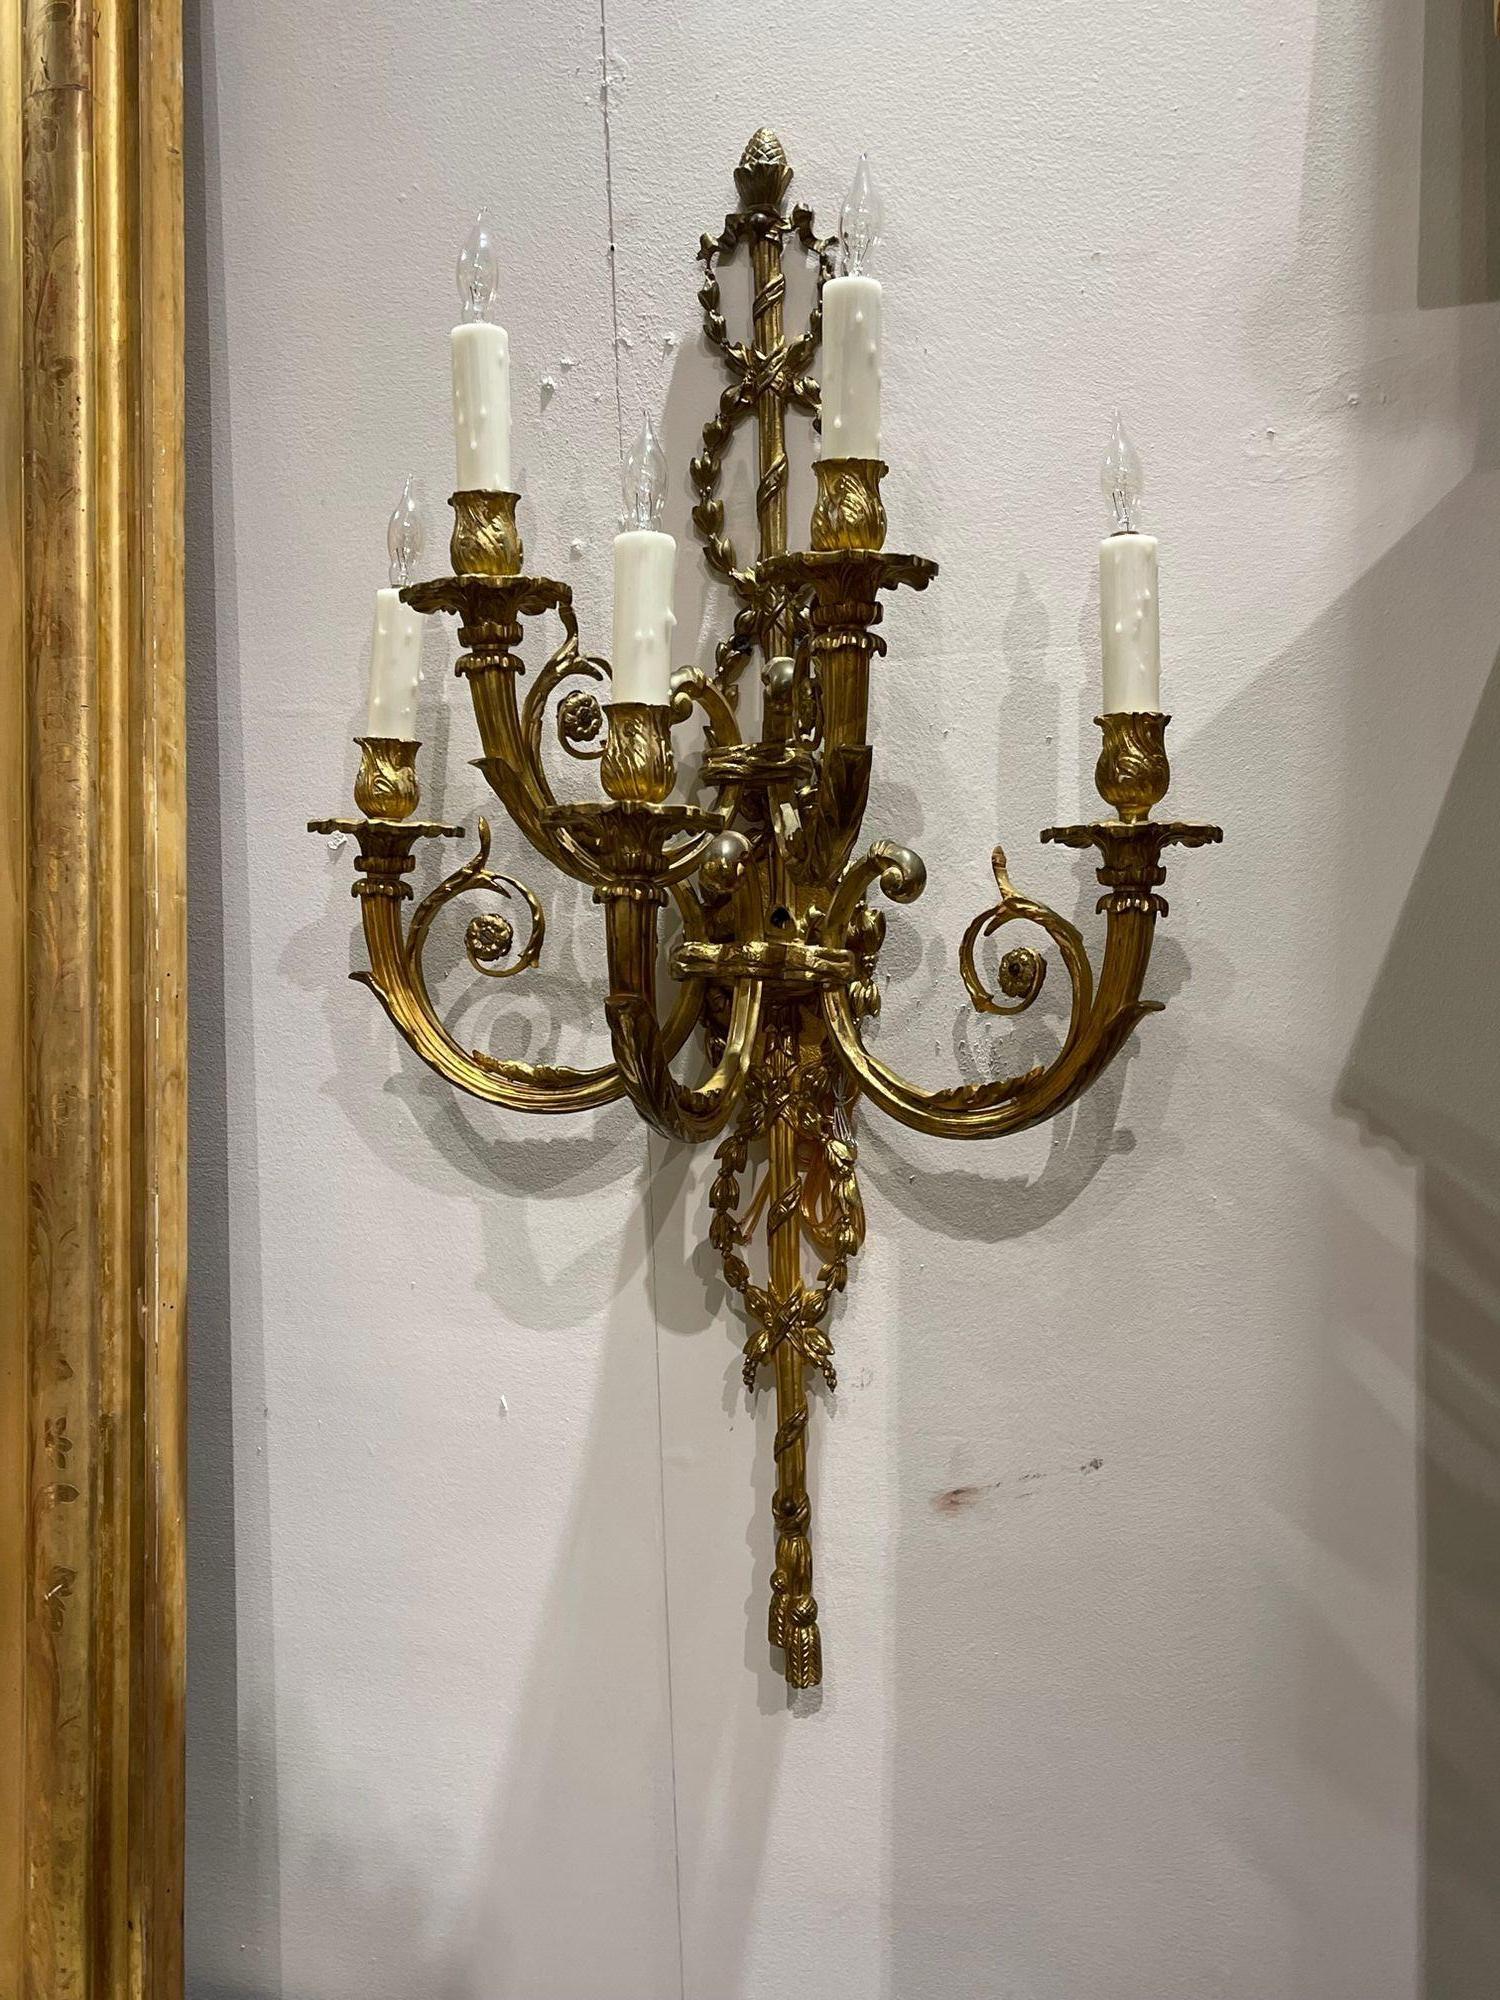 Exquisites Paar vergoldeter Bronzewandleuchter mit 5 Lichtern im französischen Louis-XVI-Stil des 19. Wunderschönes Design mit floralen Motiven, dekorativem Seil und einer Eichel am oberen Ende. Ein echter Klassiker, der Sie sicher beeindrucken wird!